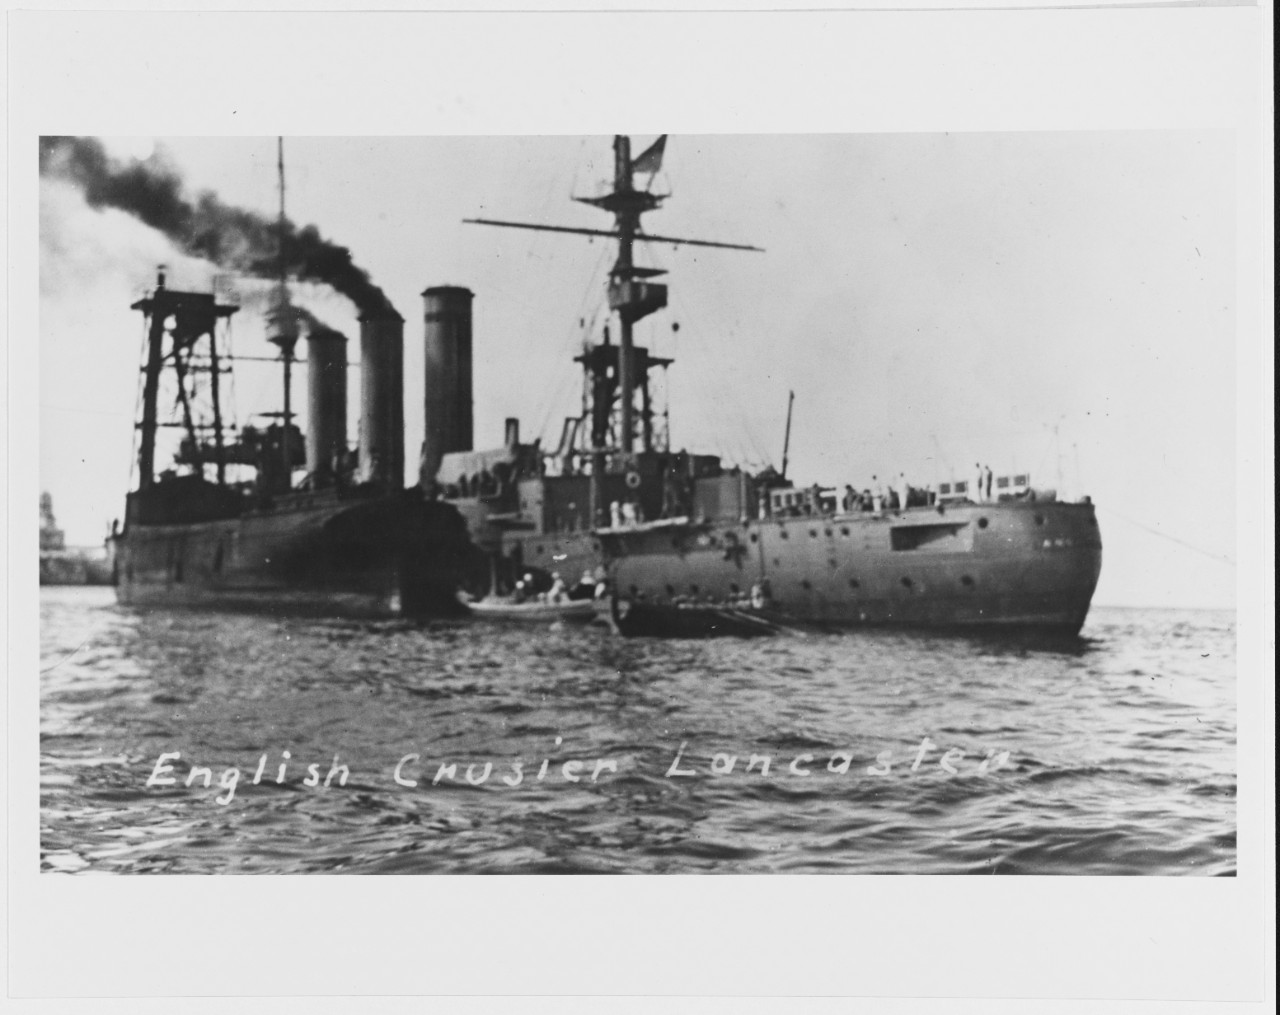 HMS LANCASTER (British Cruiser, 1902) coaling, Vera Cruz, Mexico